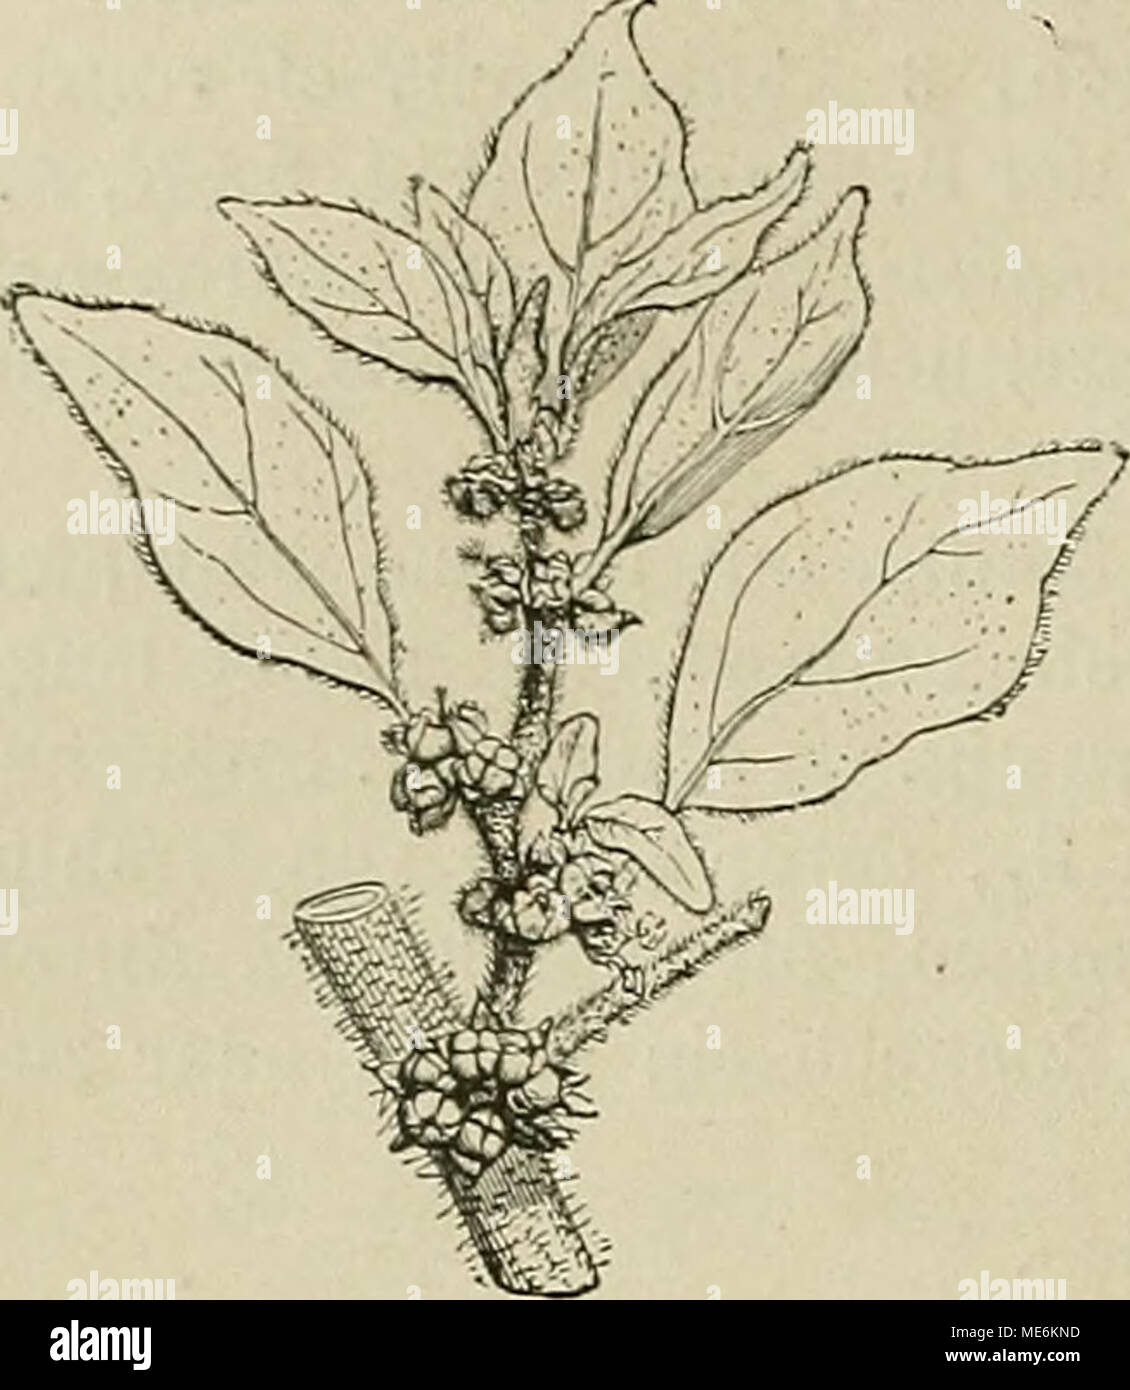 . Die NatÃ¼rlichen Pflanzenfamilien : nebst ihren Gattungen und wichtigeren Arten, insbesondere den Nutzpflanzen . Fig. So. Parietaria officinalis L. StÃ¼ck eines BlÃ¼tenstandes. (Nach Baillon.) 35. Gesnouinia Gaudich. Von voriger Gattung hauptsÃ¤chlich durch monÃ¶cische Bl. und linealische N. verschieden. â StrÃ¤ucher. (Fig. 84 B.)  Art, G. arborea (L.) Gaudich., auf den Canaren. 3 6. Rousselia Gaudich. Ebenfalls mit Parietaria nahe verwandt, vorzugsweise ausgezeichnet durch die VerlÃ¤ngerung der Achse in eine dÃ¼nne Platte Ã¼ber die Insertion der beiden Q. Bl. eines Involucrums. (Fig. 8 4 E Stock Photo